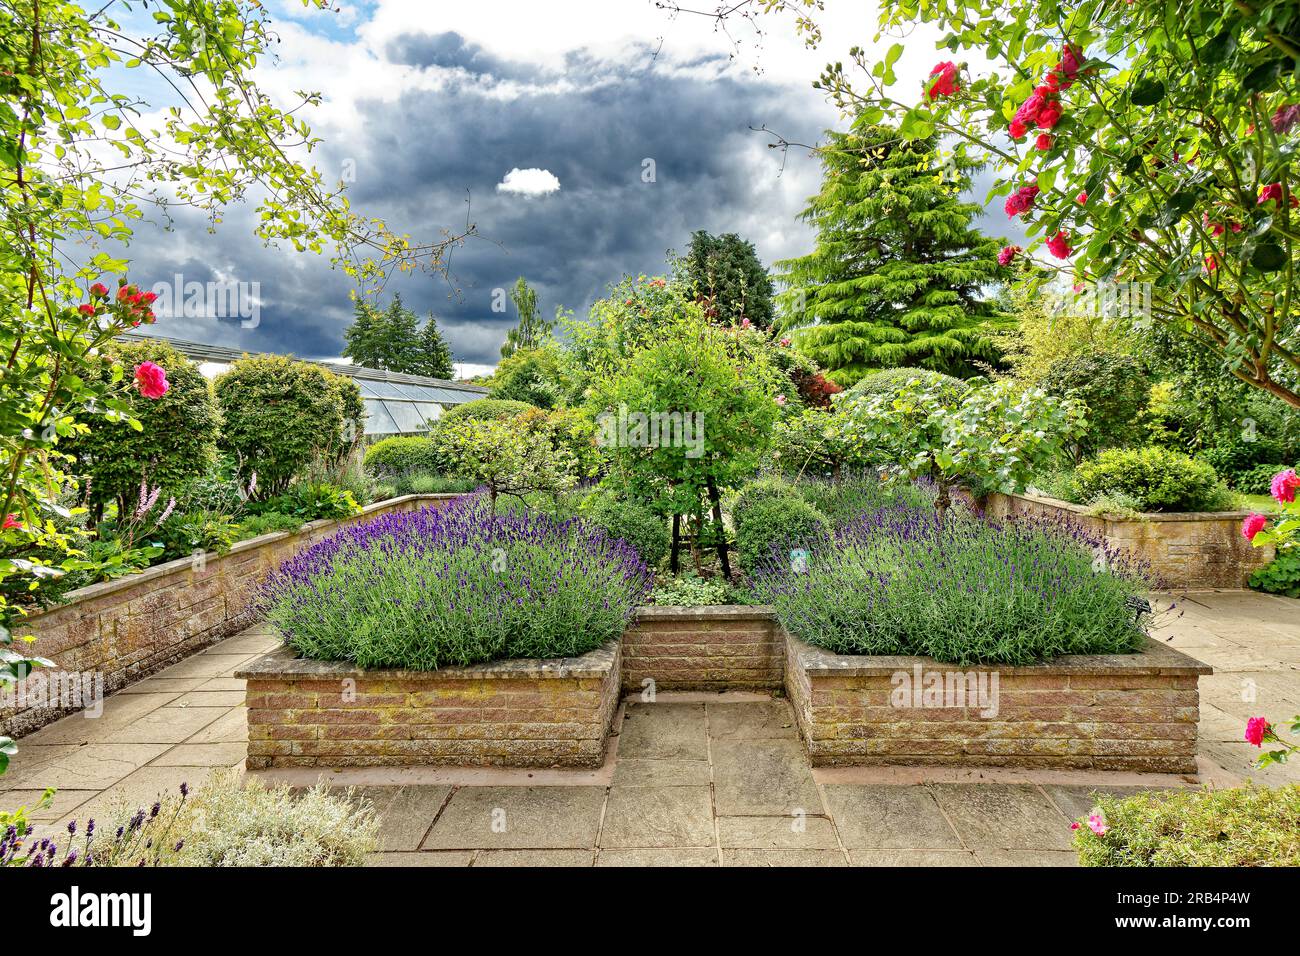 Inverness Botanic Gardens Écosse roses rouges et lavande dans des jardinières en pierre Banque D'Images